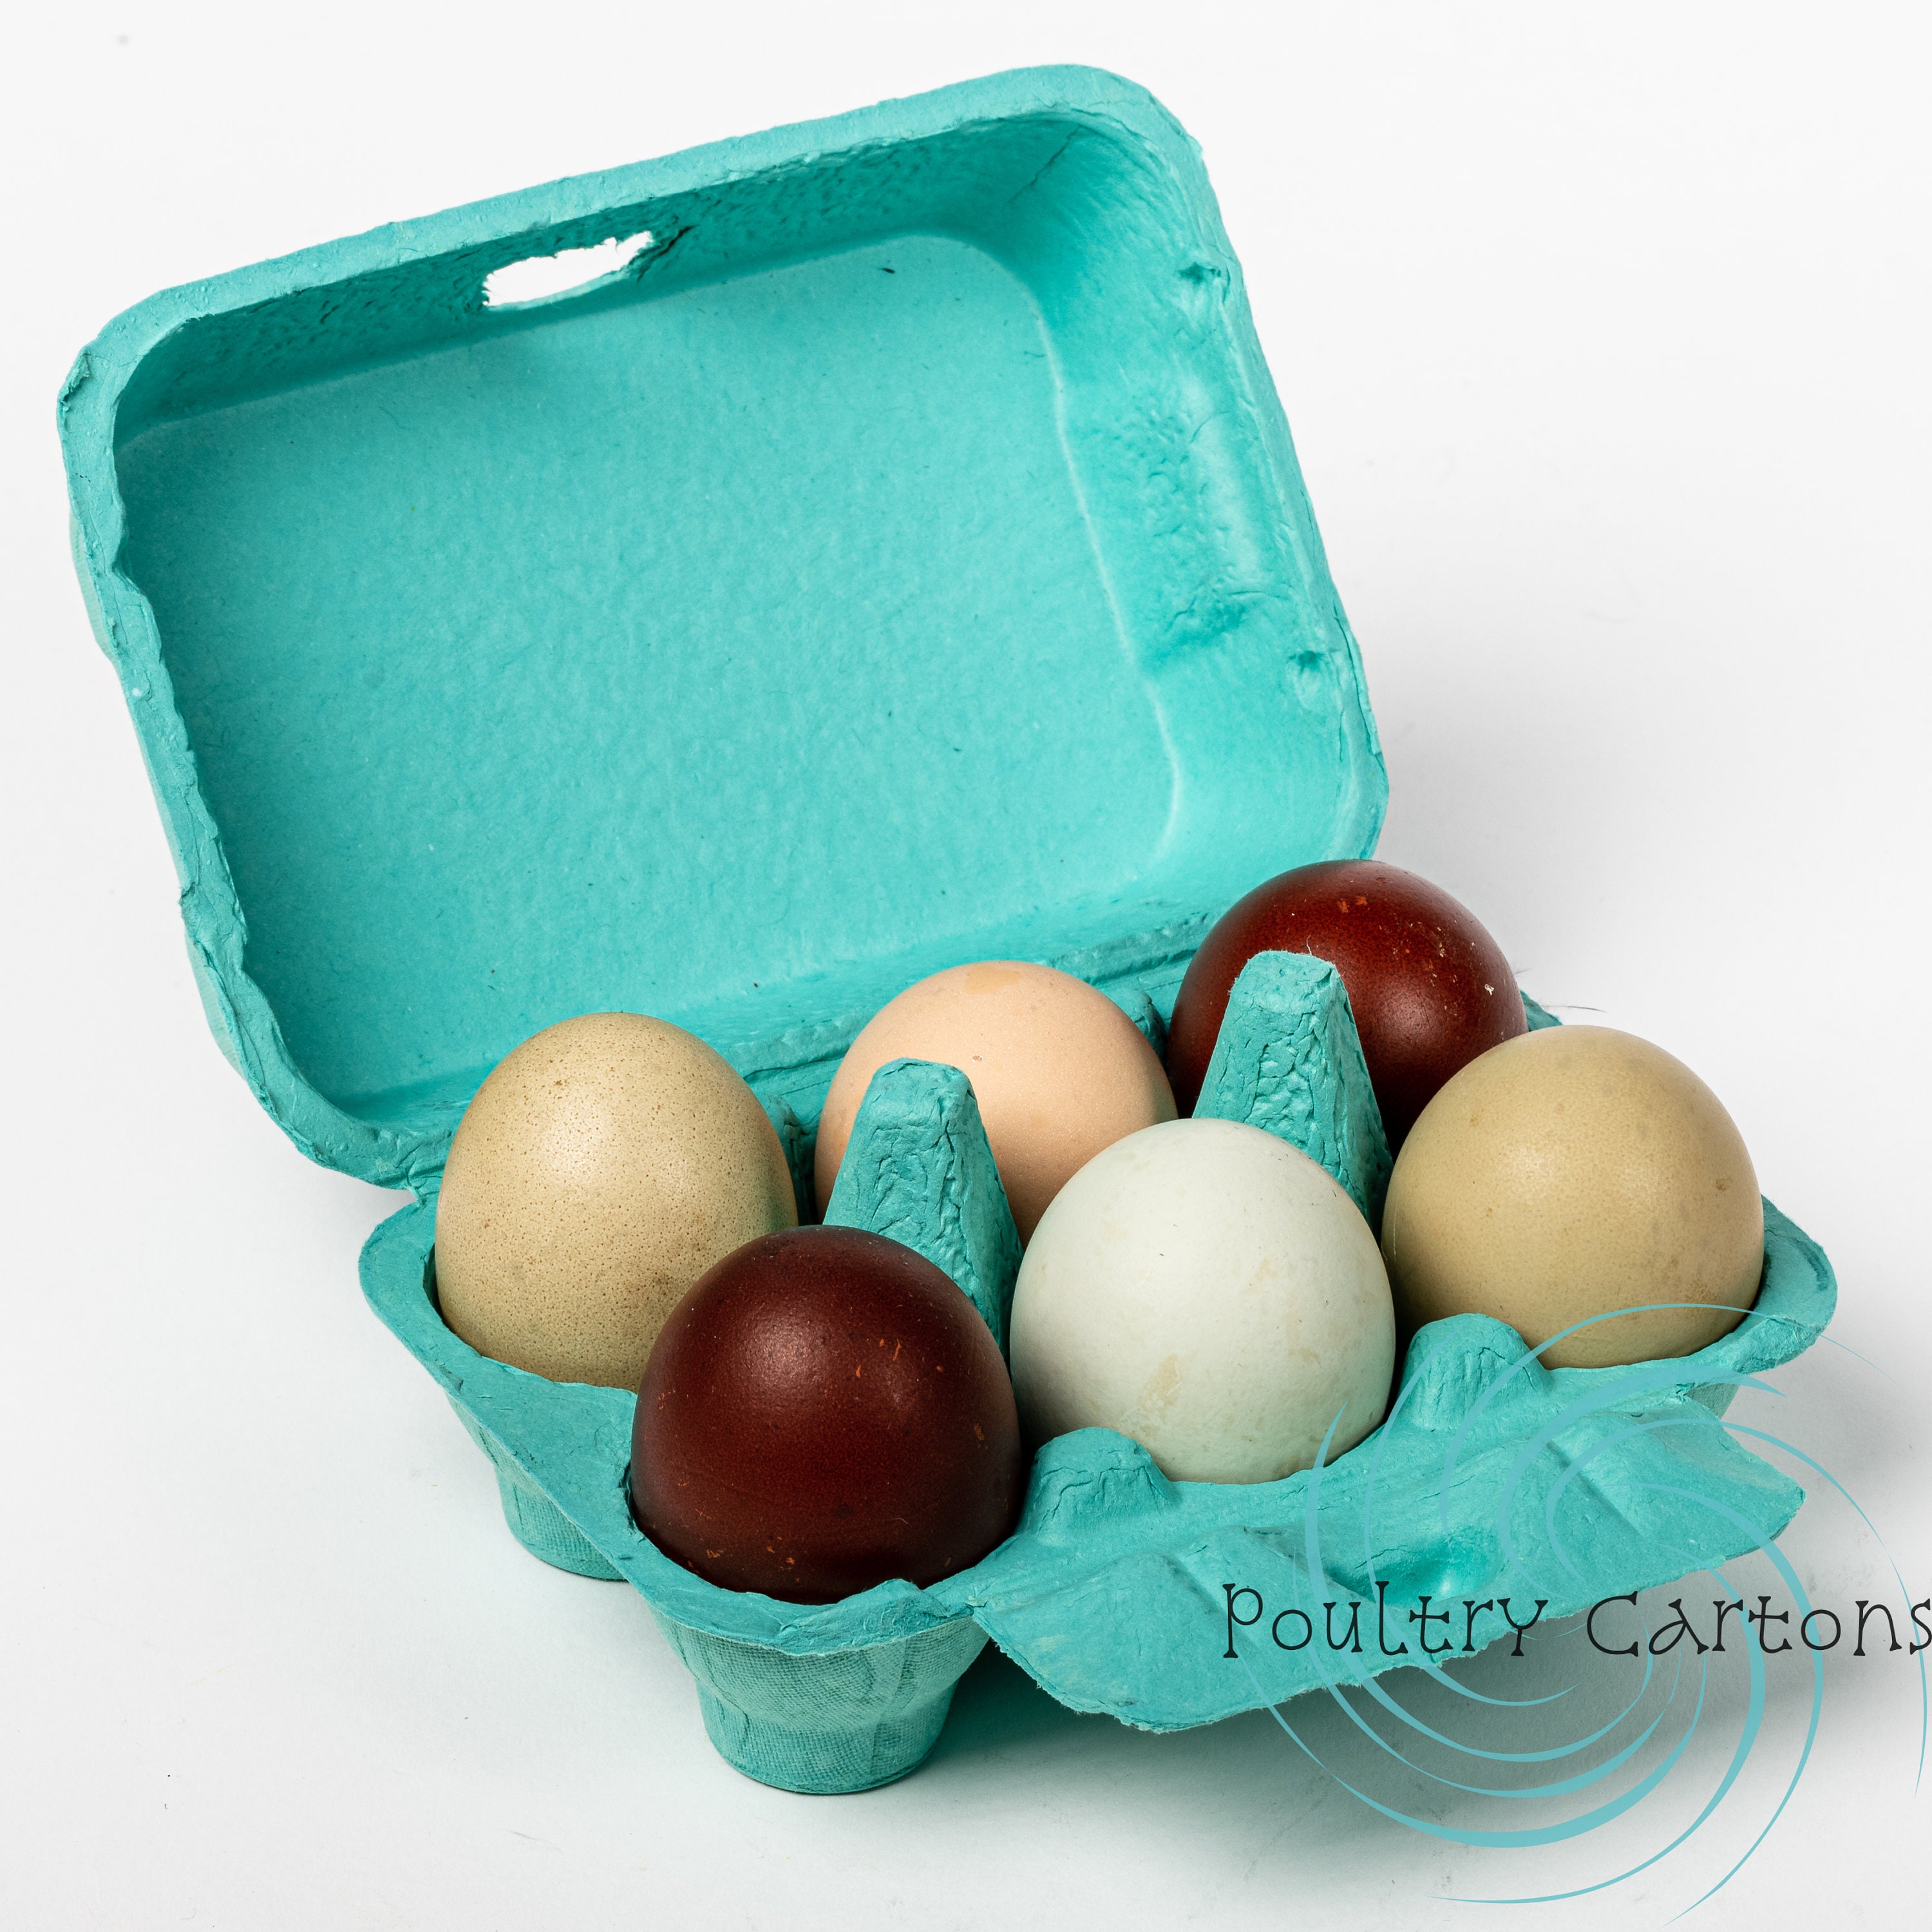  Egg Cartons for Chicken Eggs 25 Pack, 6 Pulp Fiber Egg